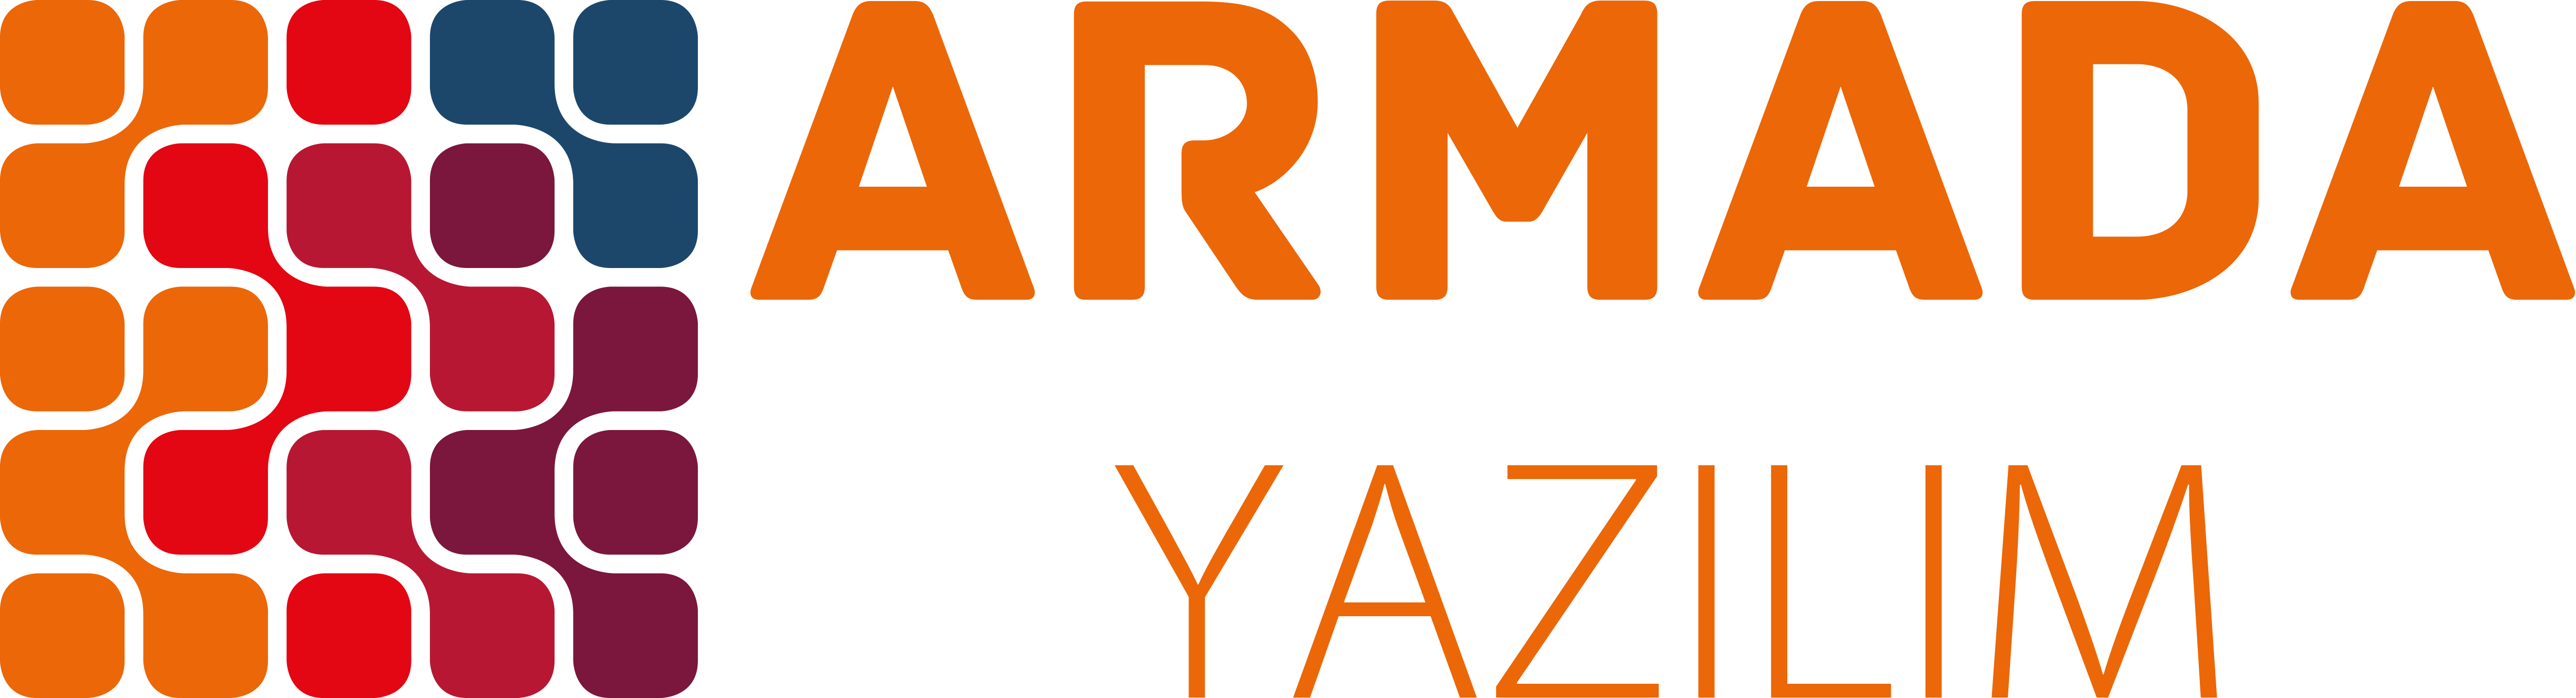 Logo_Armada_Yazilim_yanyazi